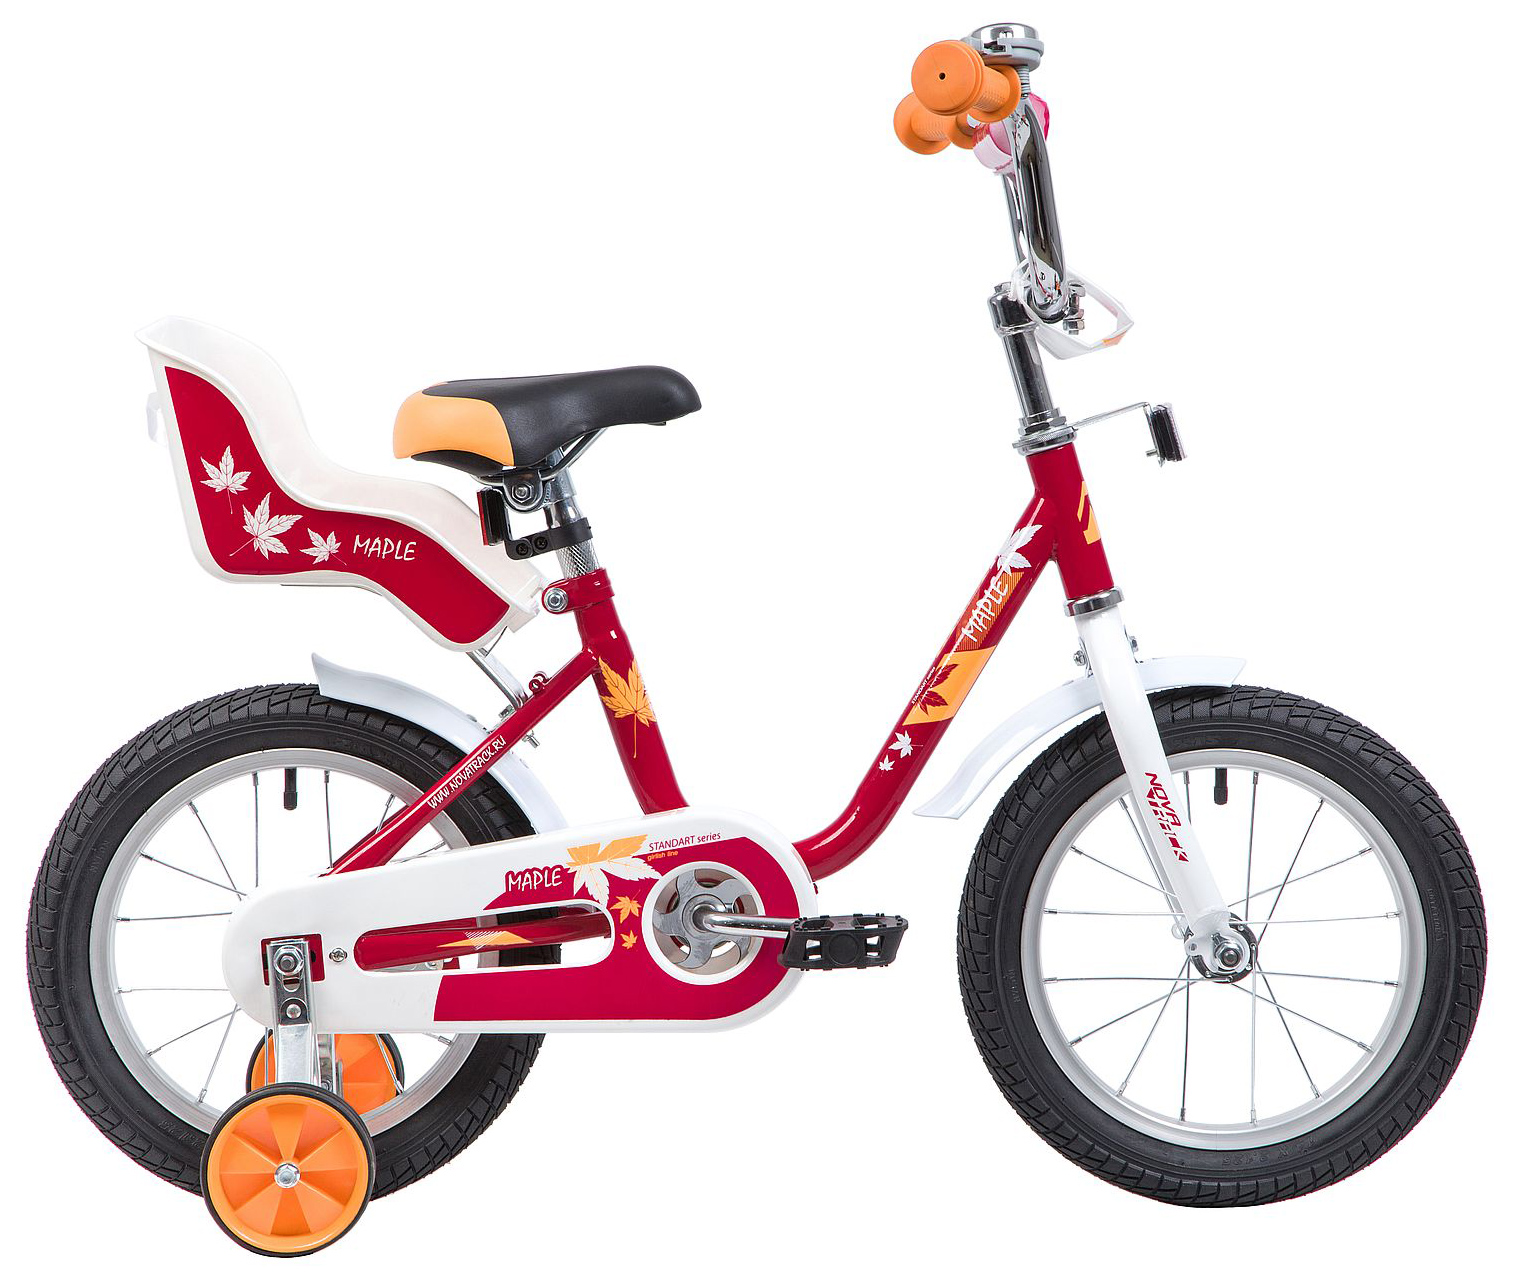 Купить детский велосипед в ростове на дону. Велосипед Novatrack Maple 14. Велосипед Novatrack 14" Maple красный. Велосипед Новатрек 14 для девочки. Детский велосипед Новатрек Maple 16.